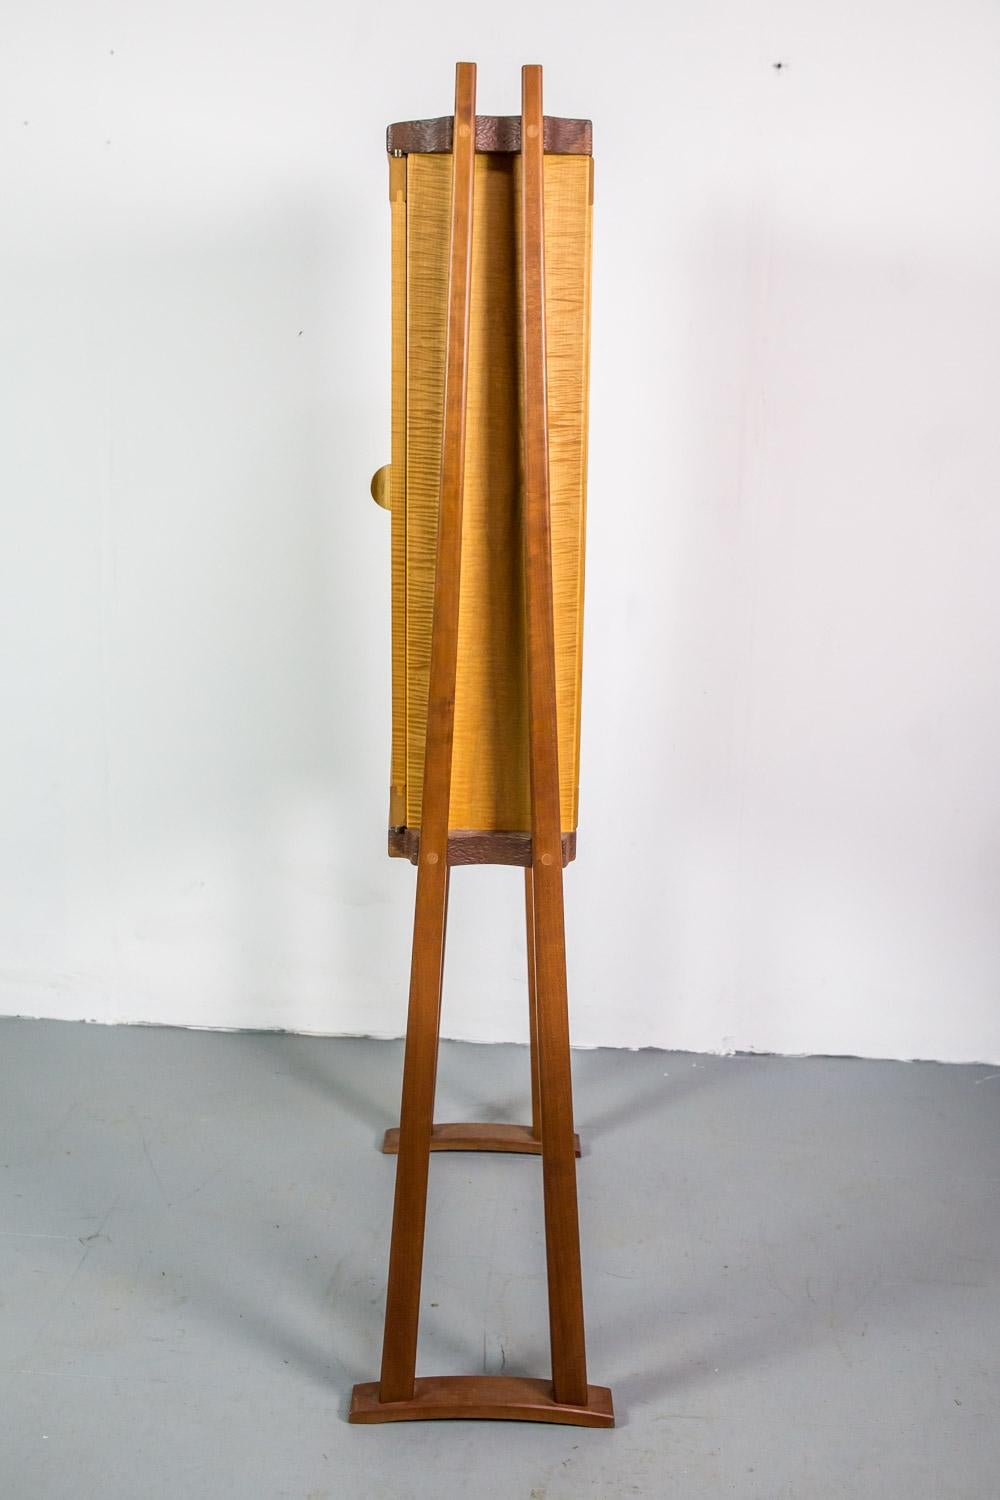 Studio Cabinet aus Wood von Mike Bartell, amerikanischer Kunsthandwerker (American Arts and Crafts) im Angebot